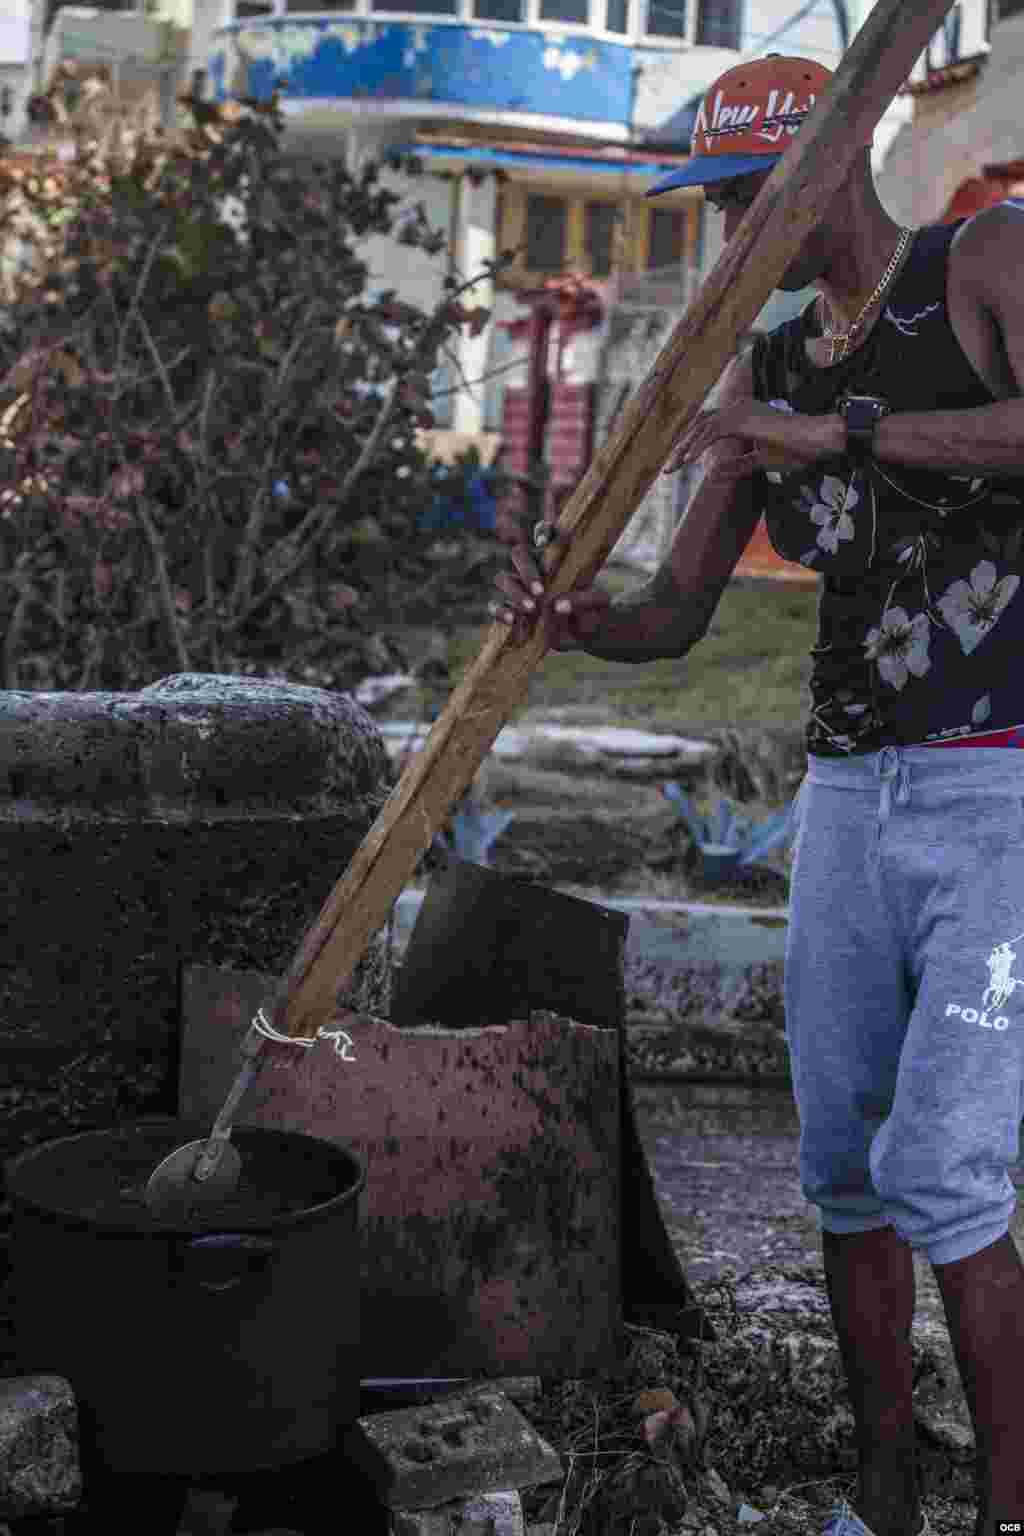 Todavía sin cuantificar los estragos ocasionados por el huracán Irma a su paso por Cuba, el Ministerio de la Agricultura habló este jueves de severos daños en los cultivos, instalaciones avícolas y ganado menor. Fotos: Angélica Producciones